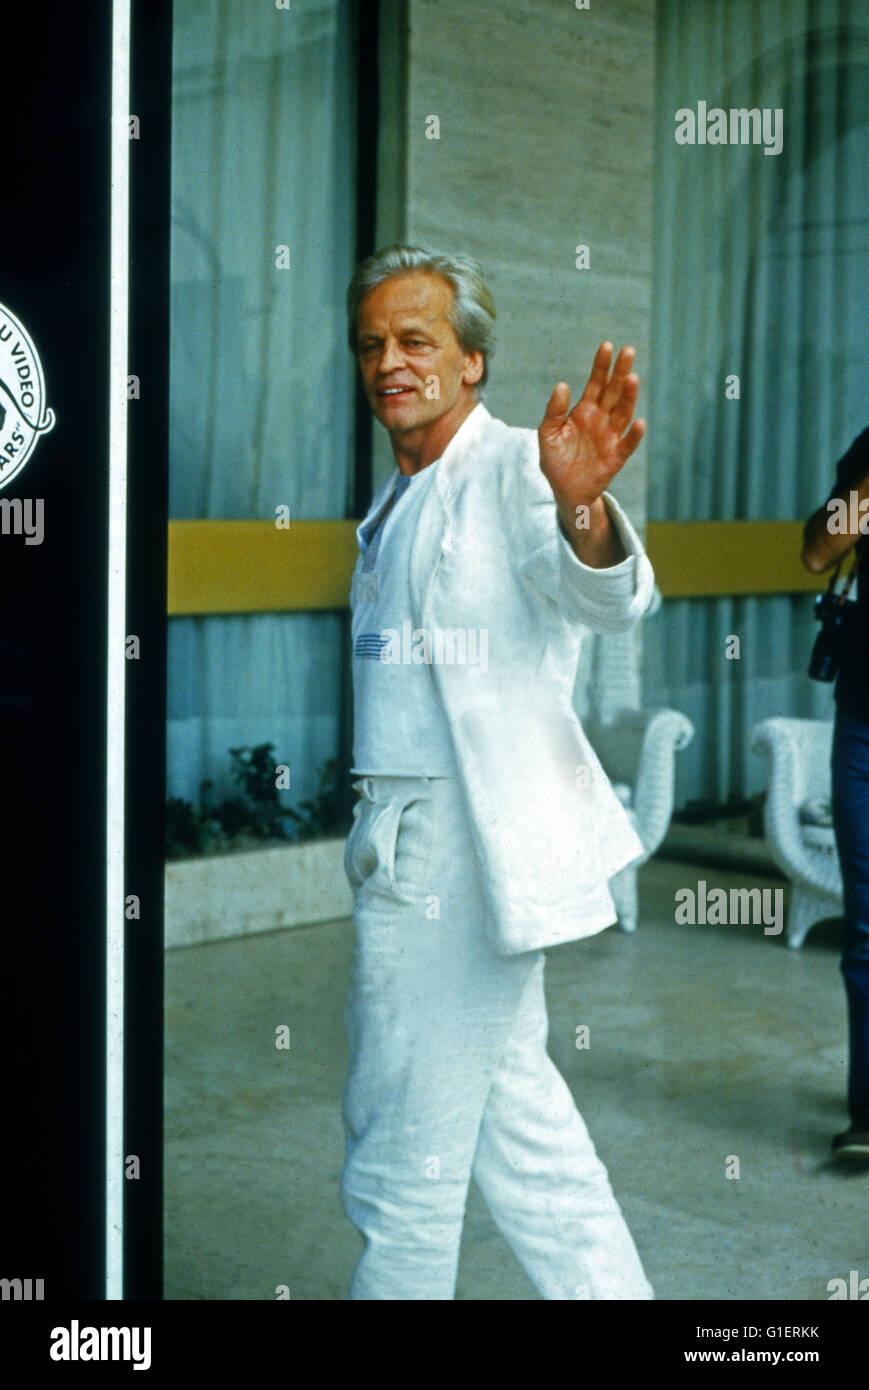 Der deutsche Schauspieler Klaus Kinski, 1990er Jahre. German actor Klaus Kinski, 1990s. Stock Photo